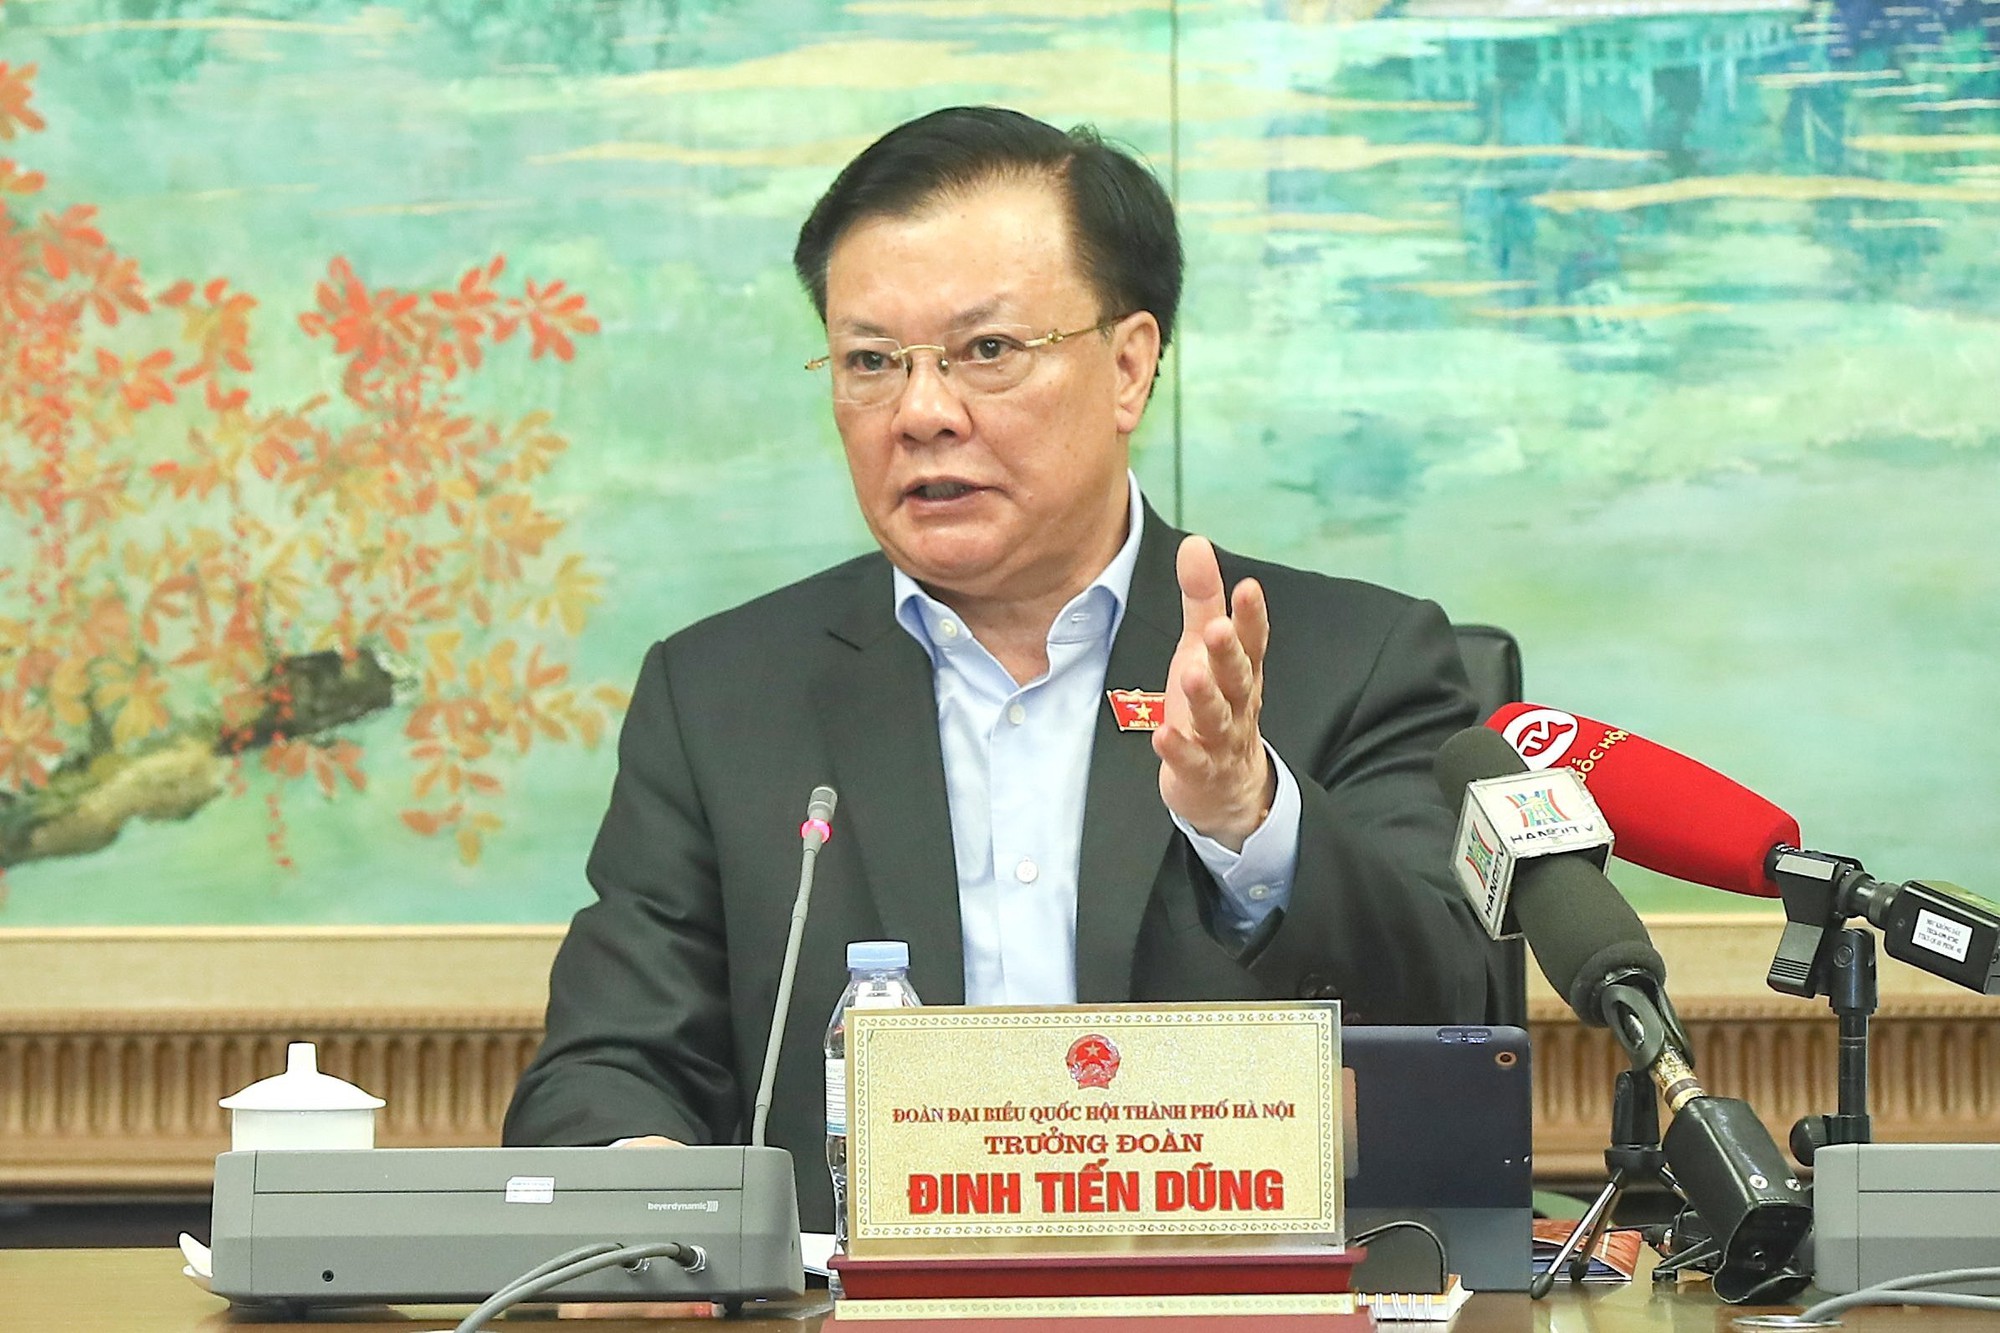 Bí thư Hà Nội thừa nhận Thủ đô gặp khó di dời các trường đại học, bệnh viện - Ảnh 1.